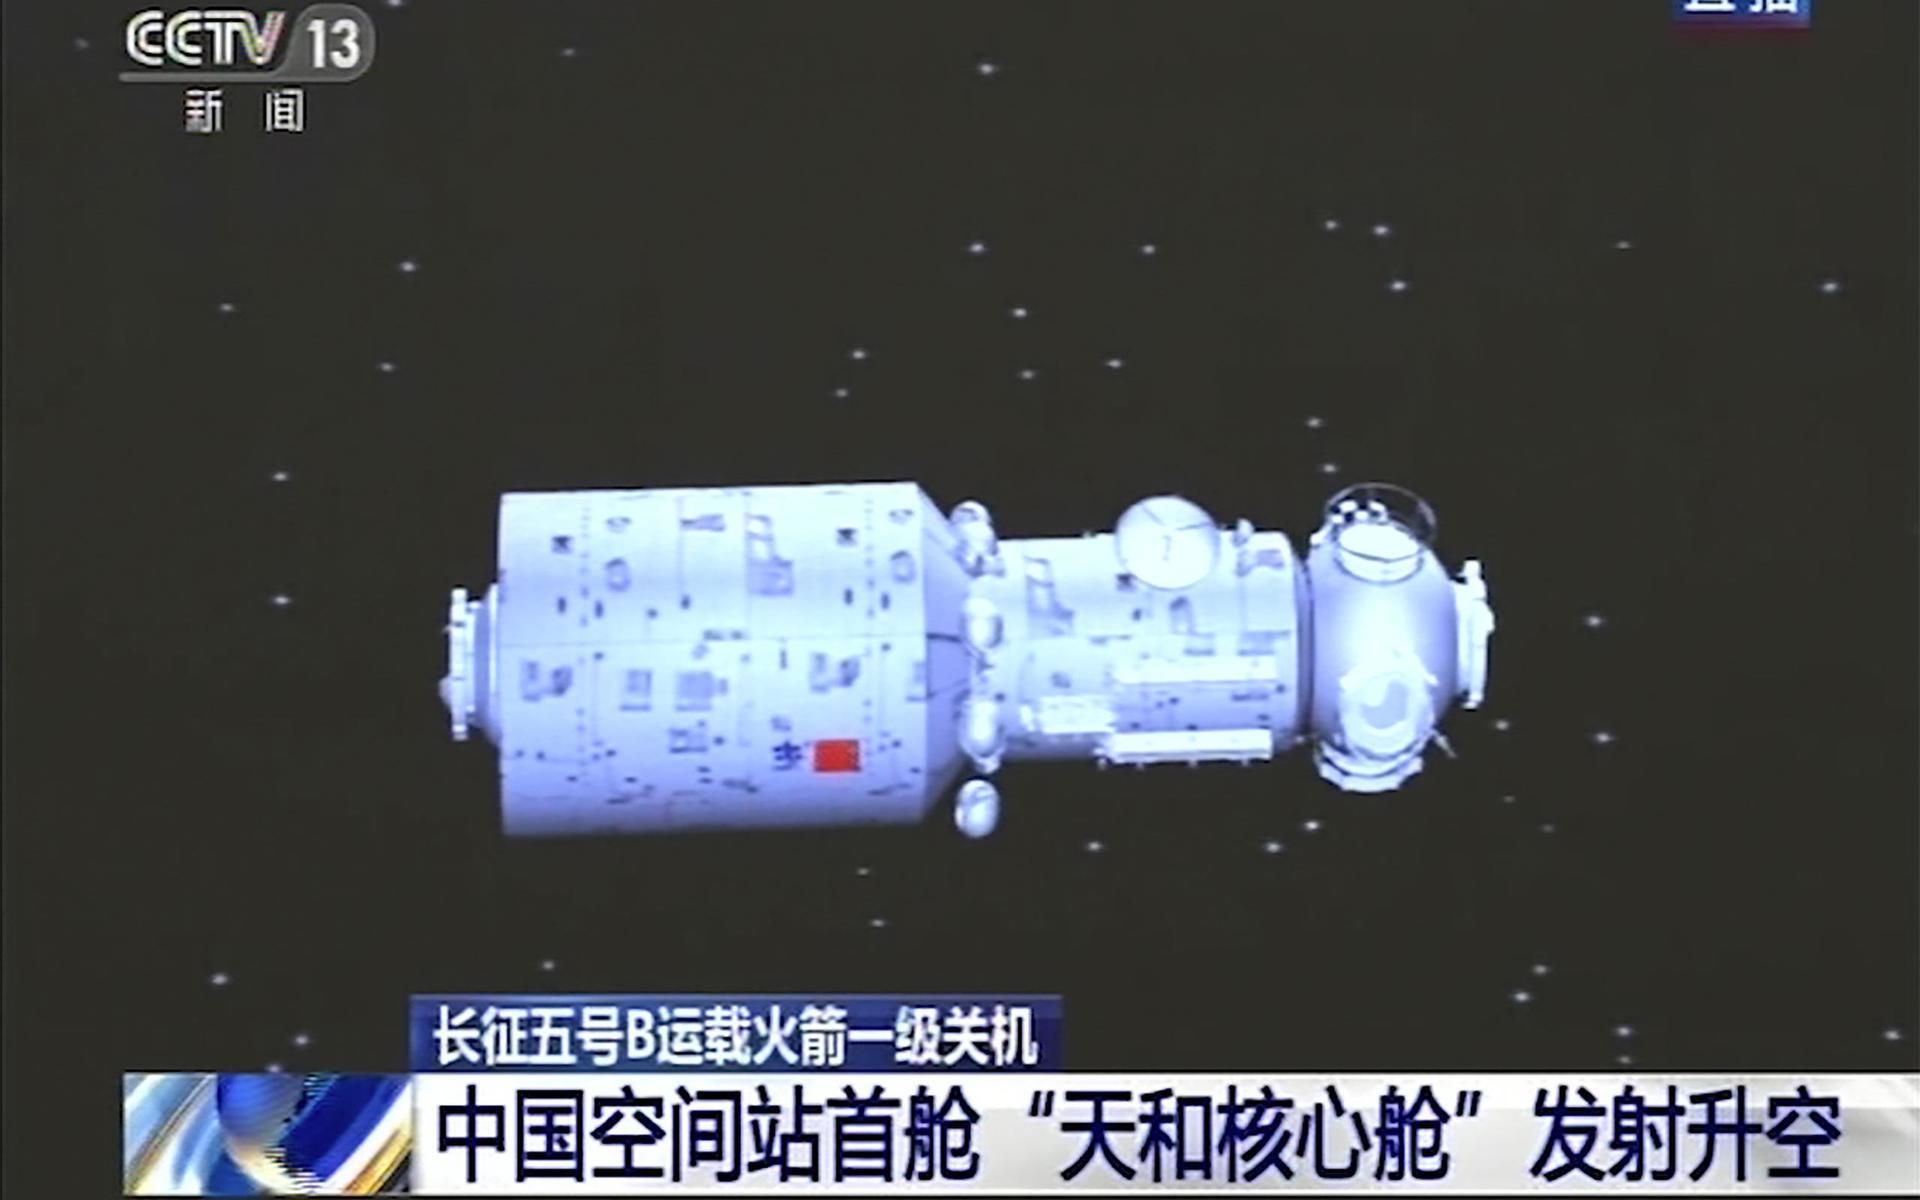 En rendering som visar den kinesiska rymdstationen i rymden. Stationen är Kinas svar på rymdstationen ISS. 